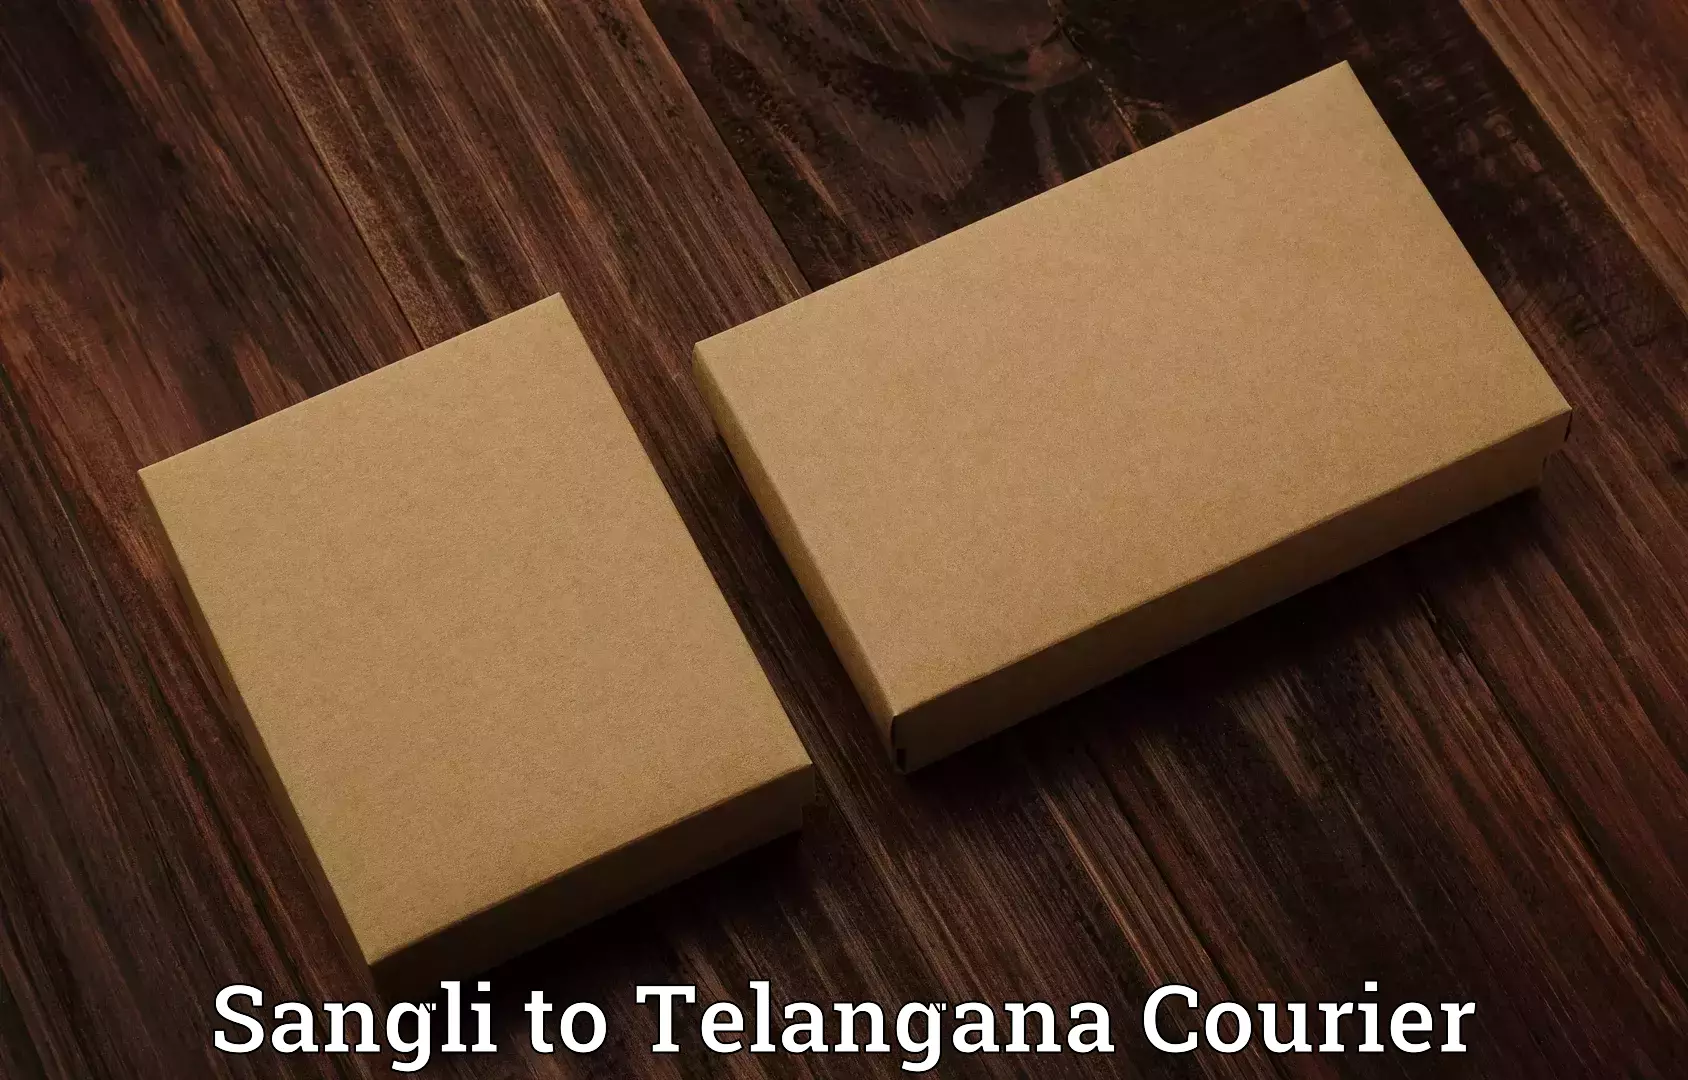 Baggage shipping service Sangli to Telangana